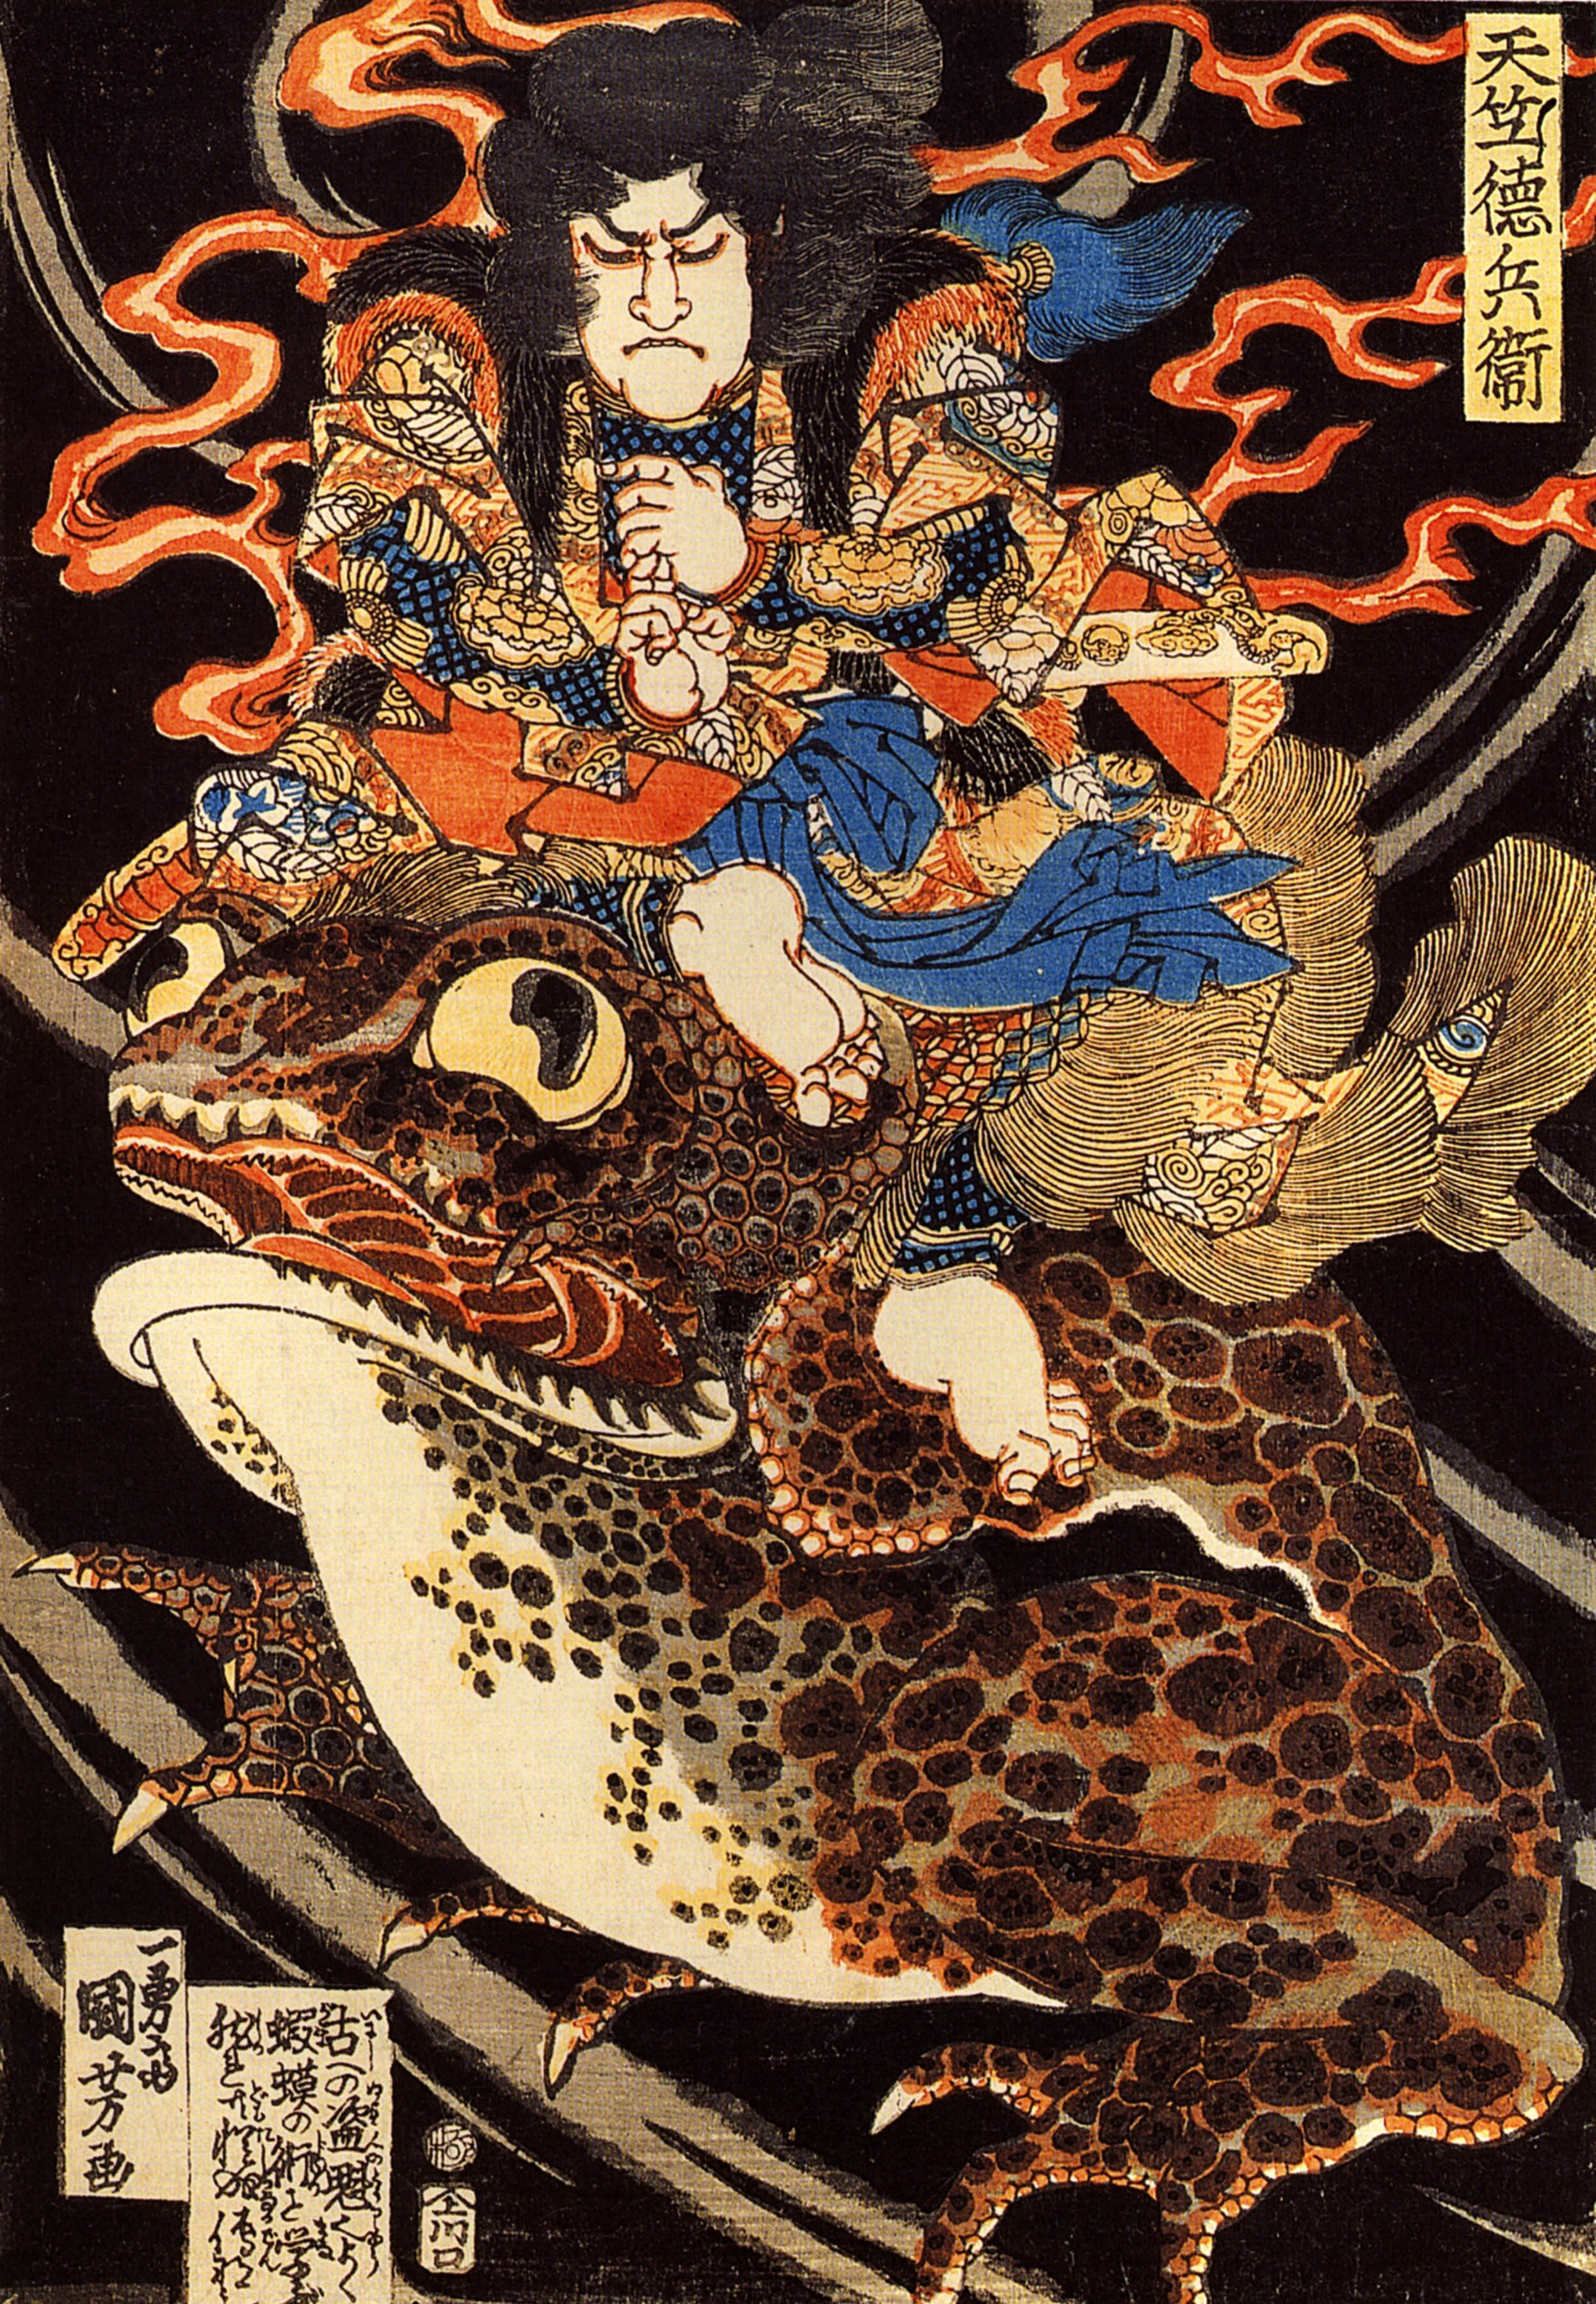 天竺徳兵衛（幕末の浮世絵師・歌川国芳の画）の拡大画像